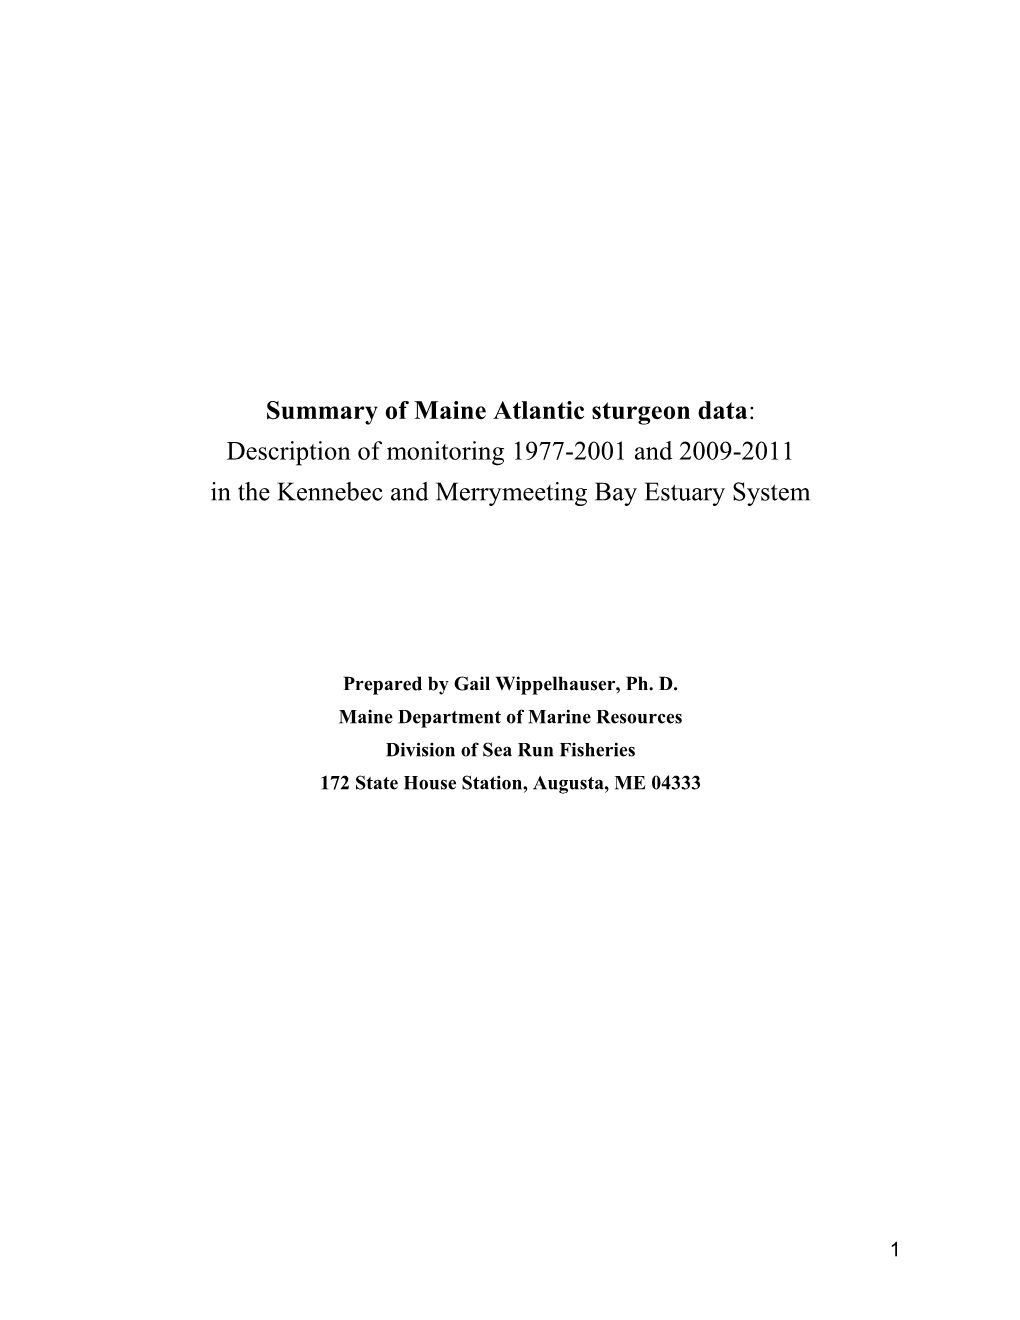 Atlantic Sturgeon – 1977-2001 Data Summary